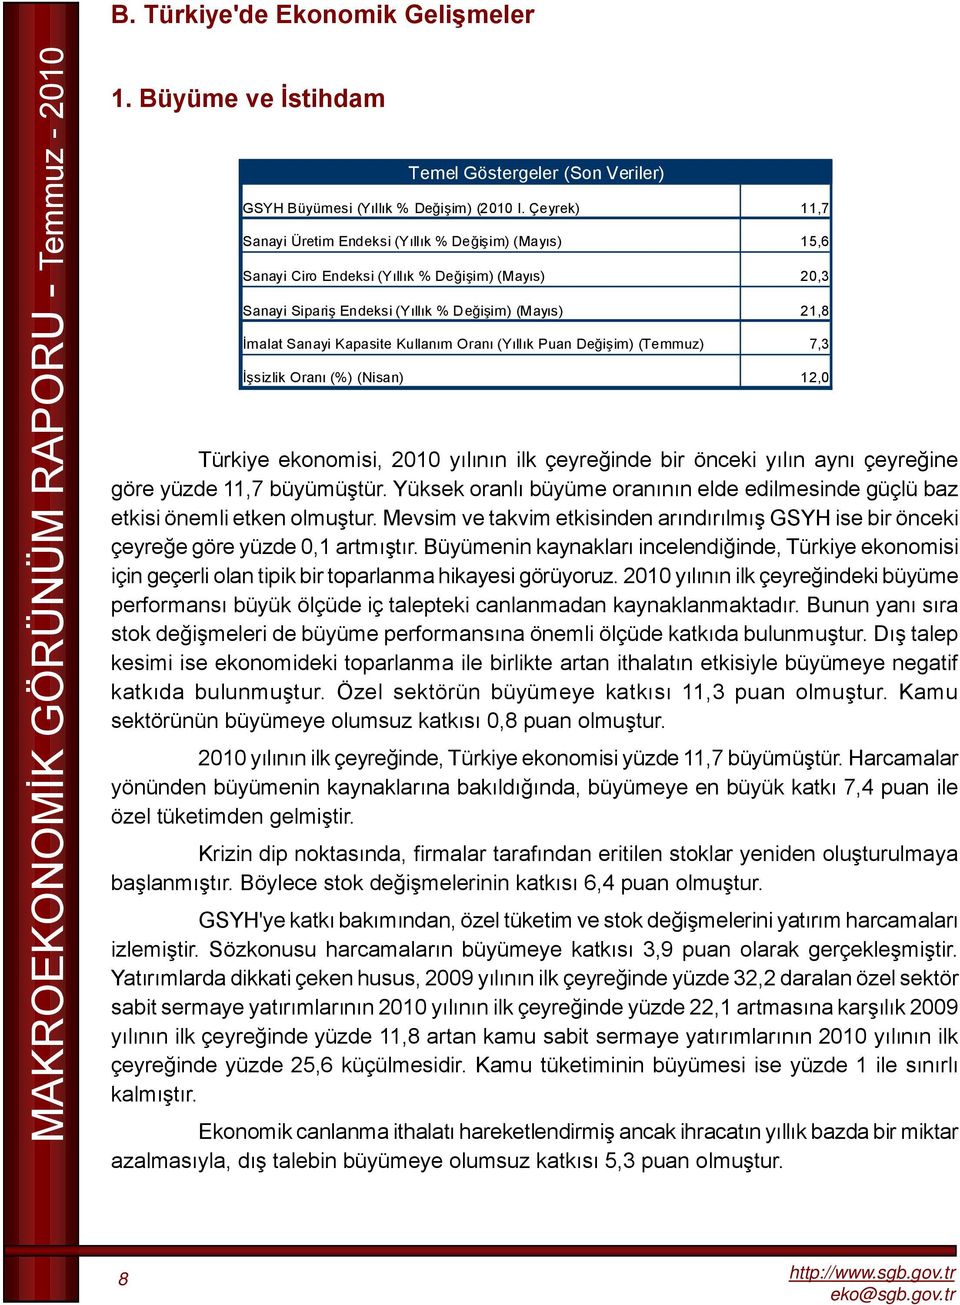 Oranı (Yıllık Puan Değişim) (Temmuz), İşsizlik Oranı (%) (Nisan) 1,0 Türkiye ekonomisi, 0 yılının ilk çeyreğinde bir önceki yılın aynı çeyreğine göre yüzde, büyümüştür.